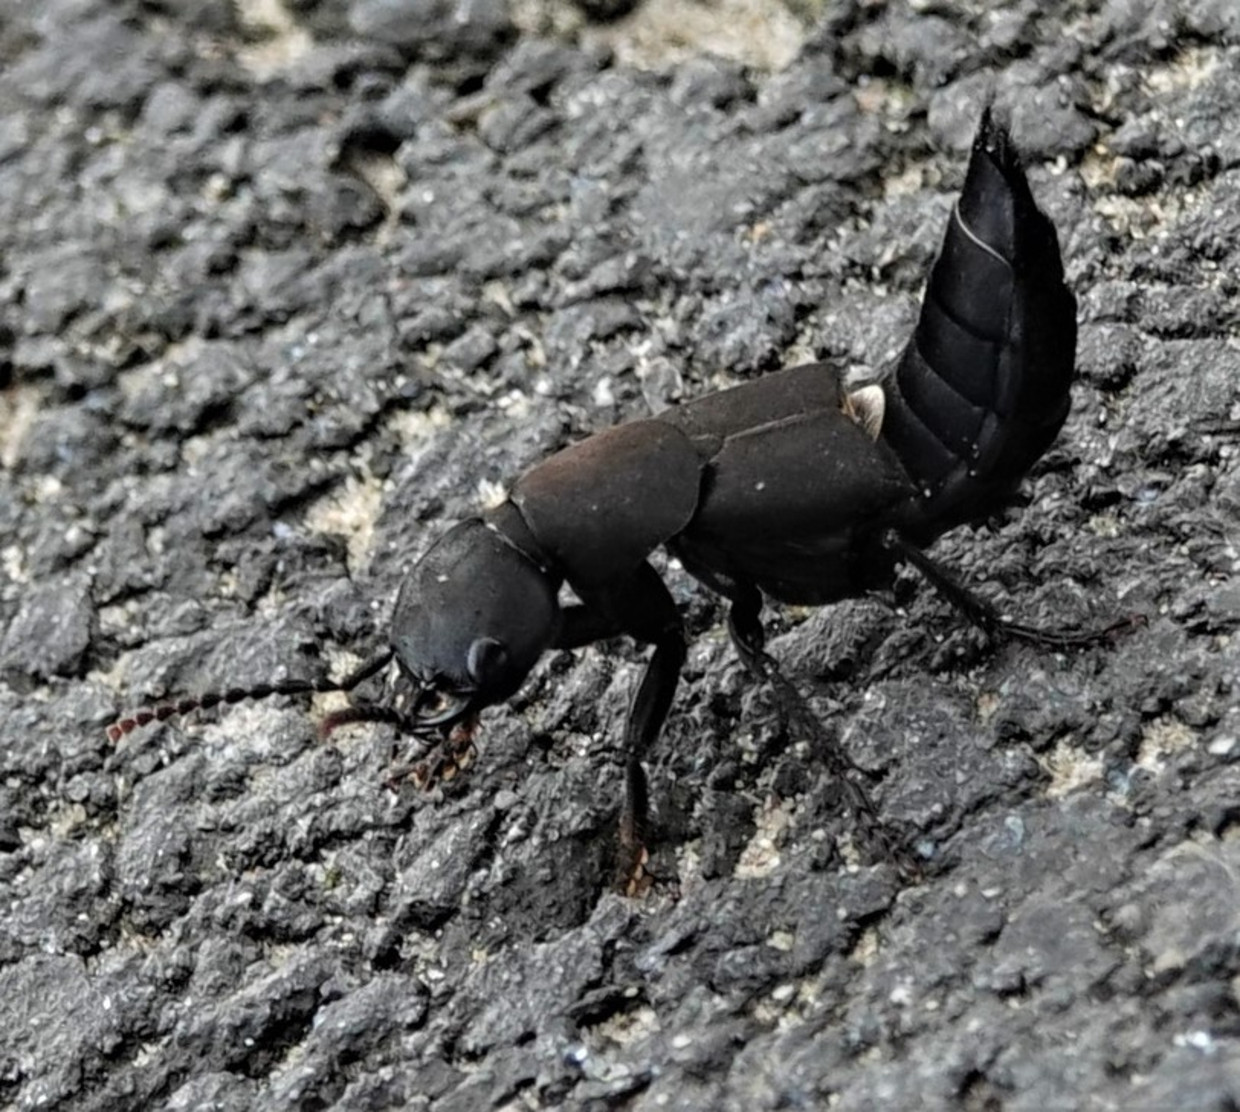 Aanpassen Geletterdheid Onderzoek Het met rust laten van stinkende kortschildkevers scheelt een boel zeep